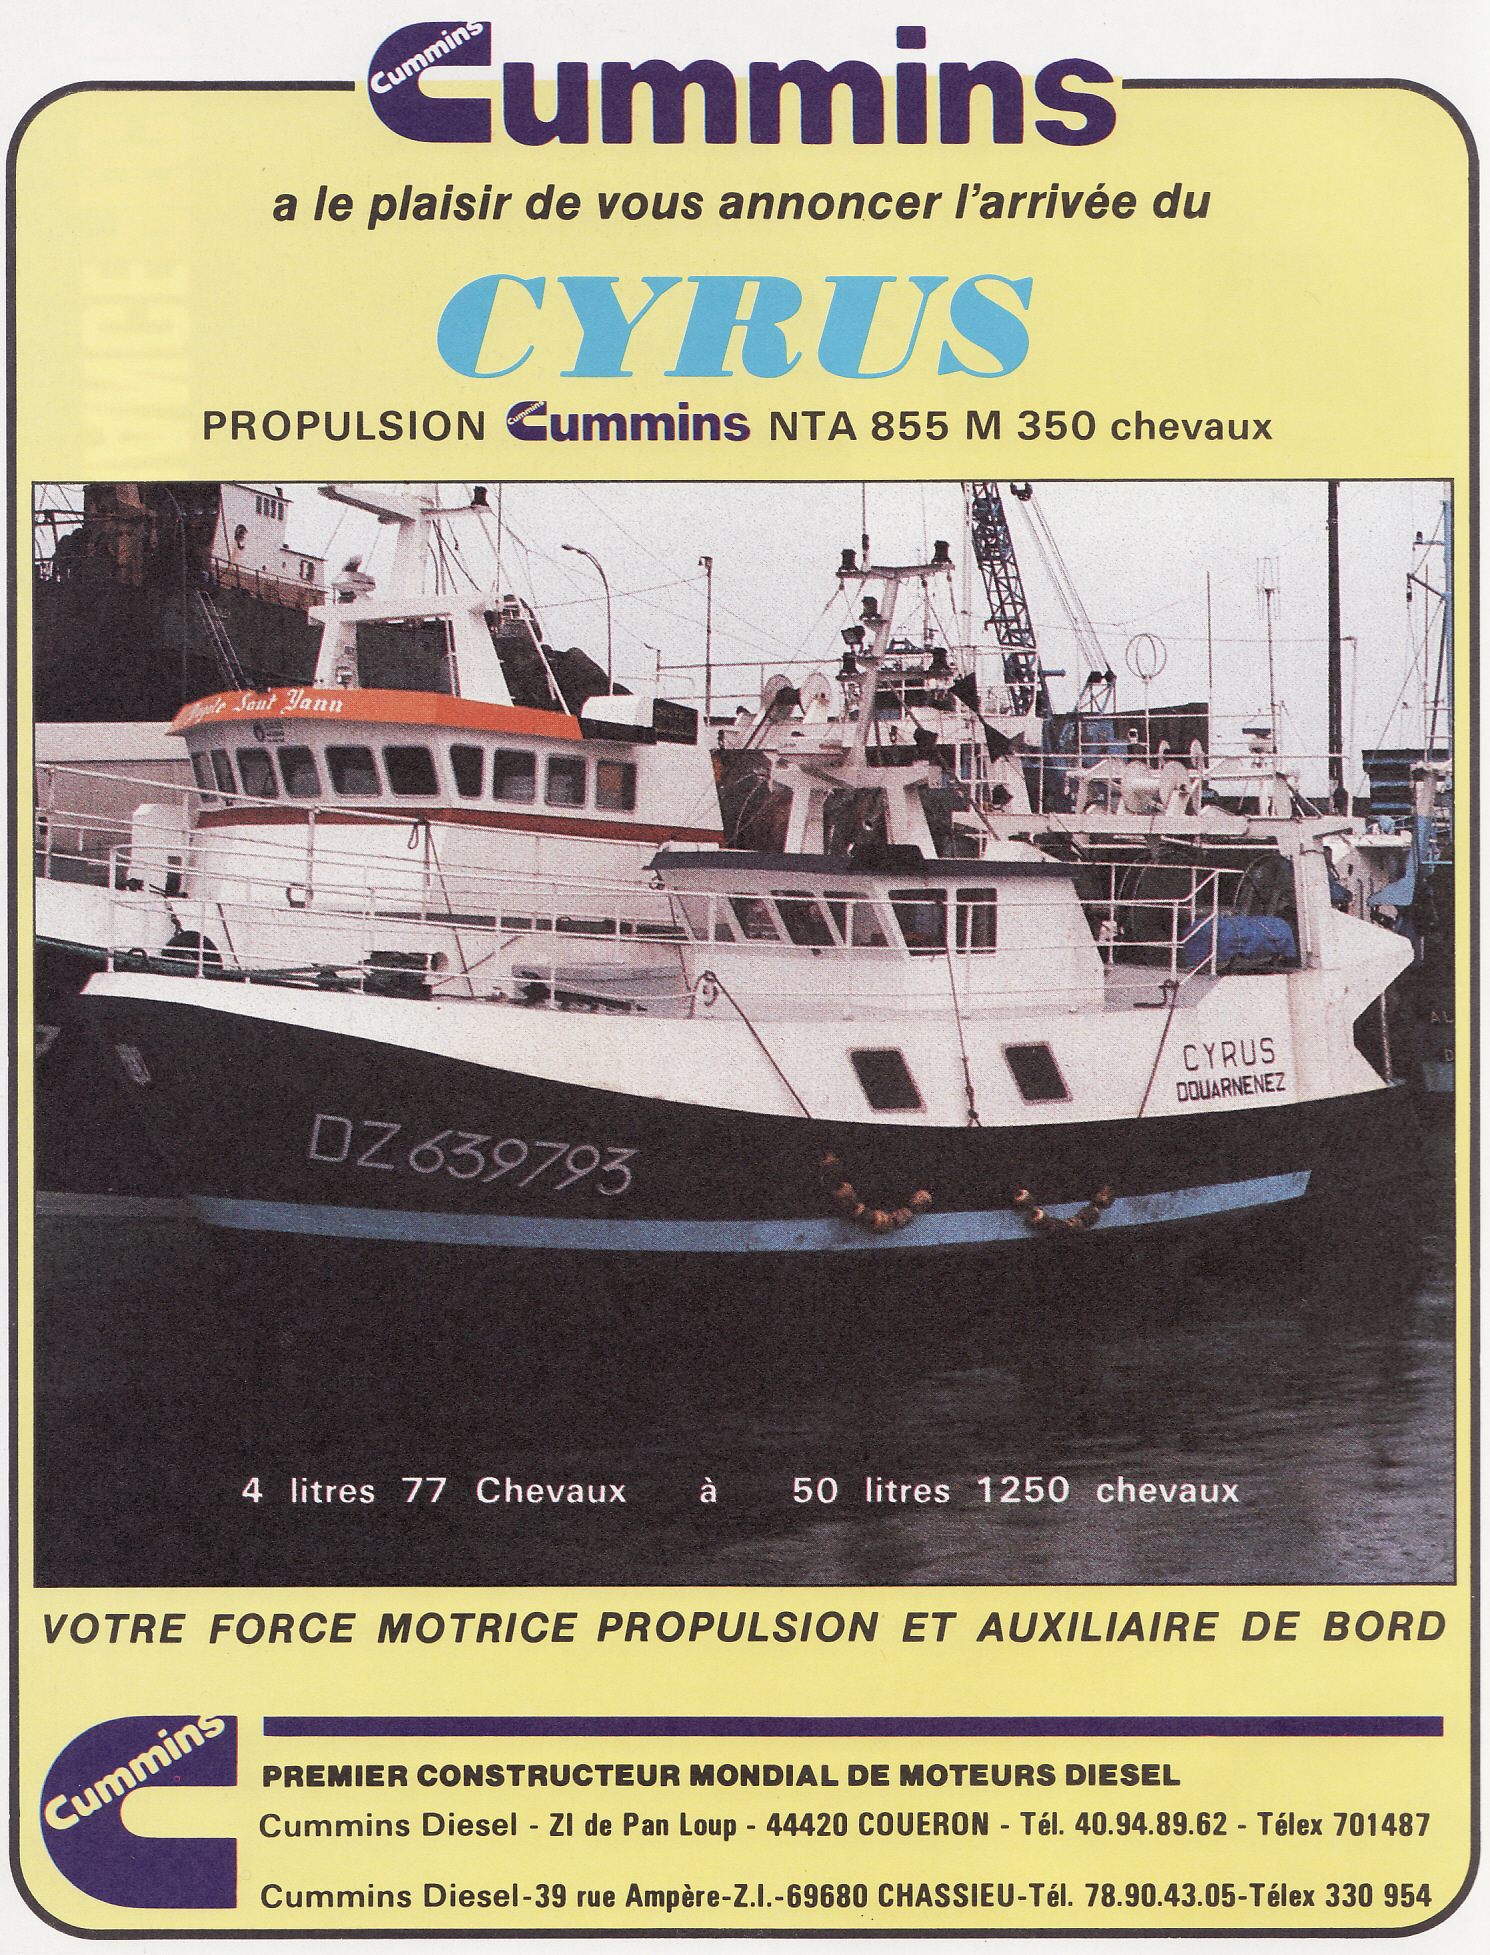 Source : France Pêche N°336 février 1989